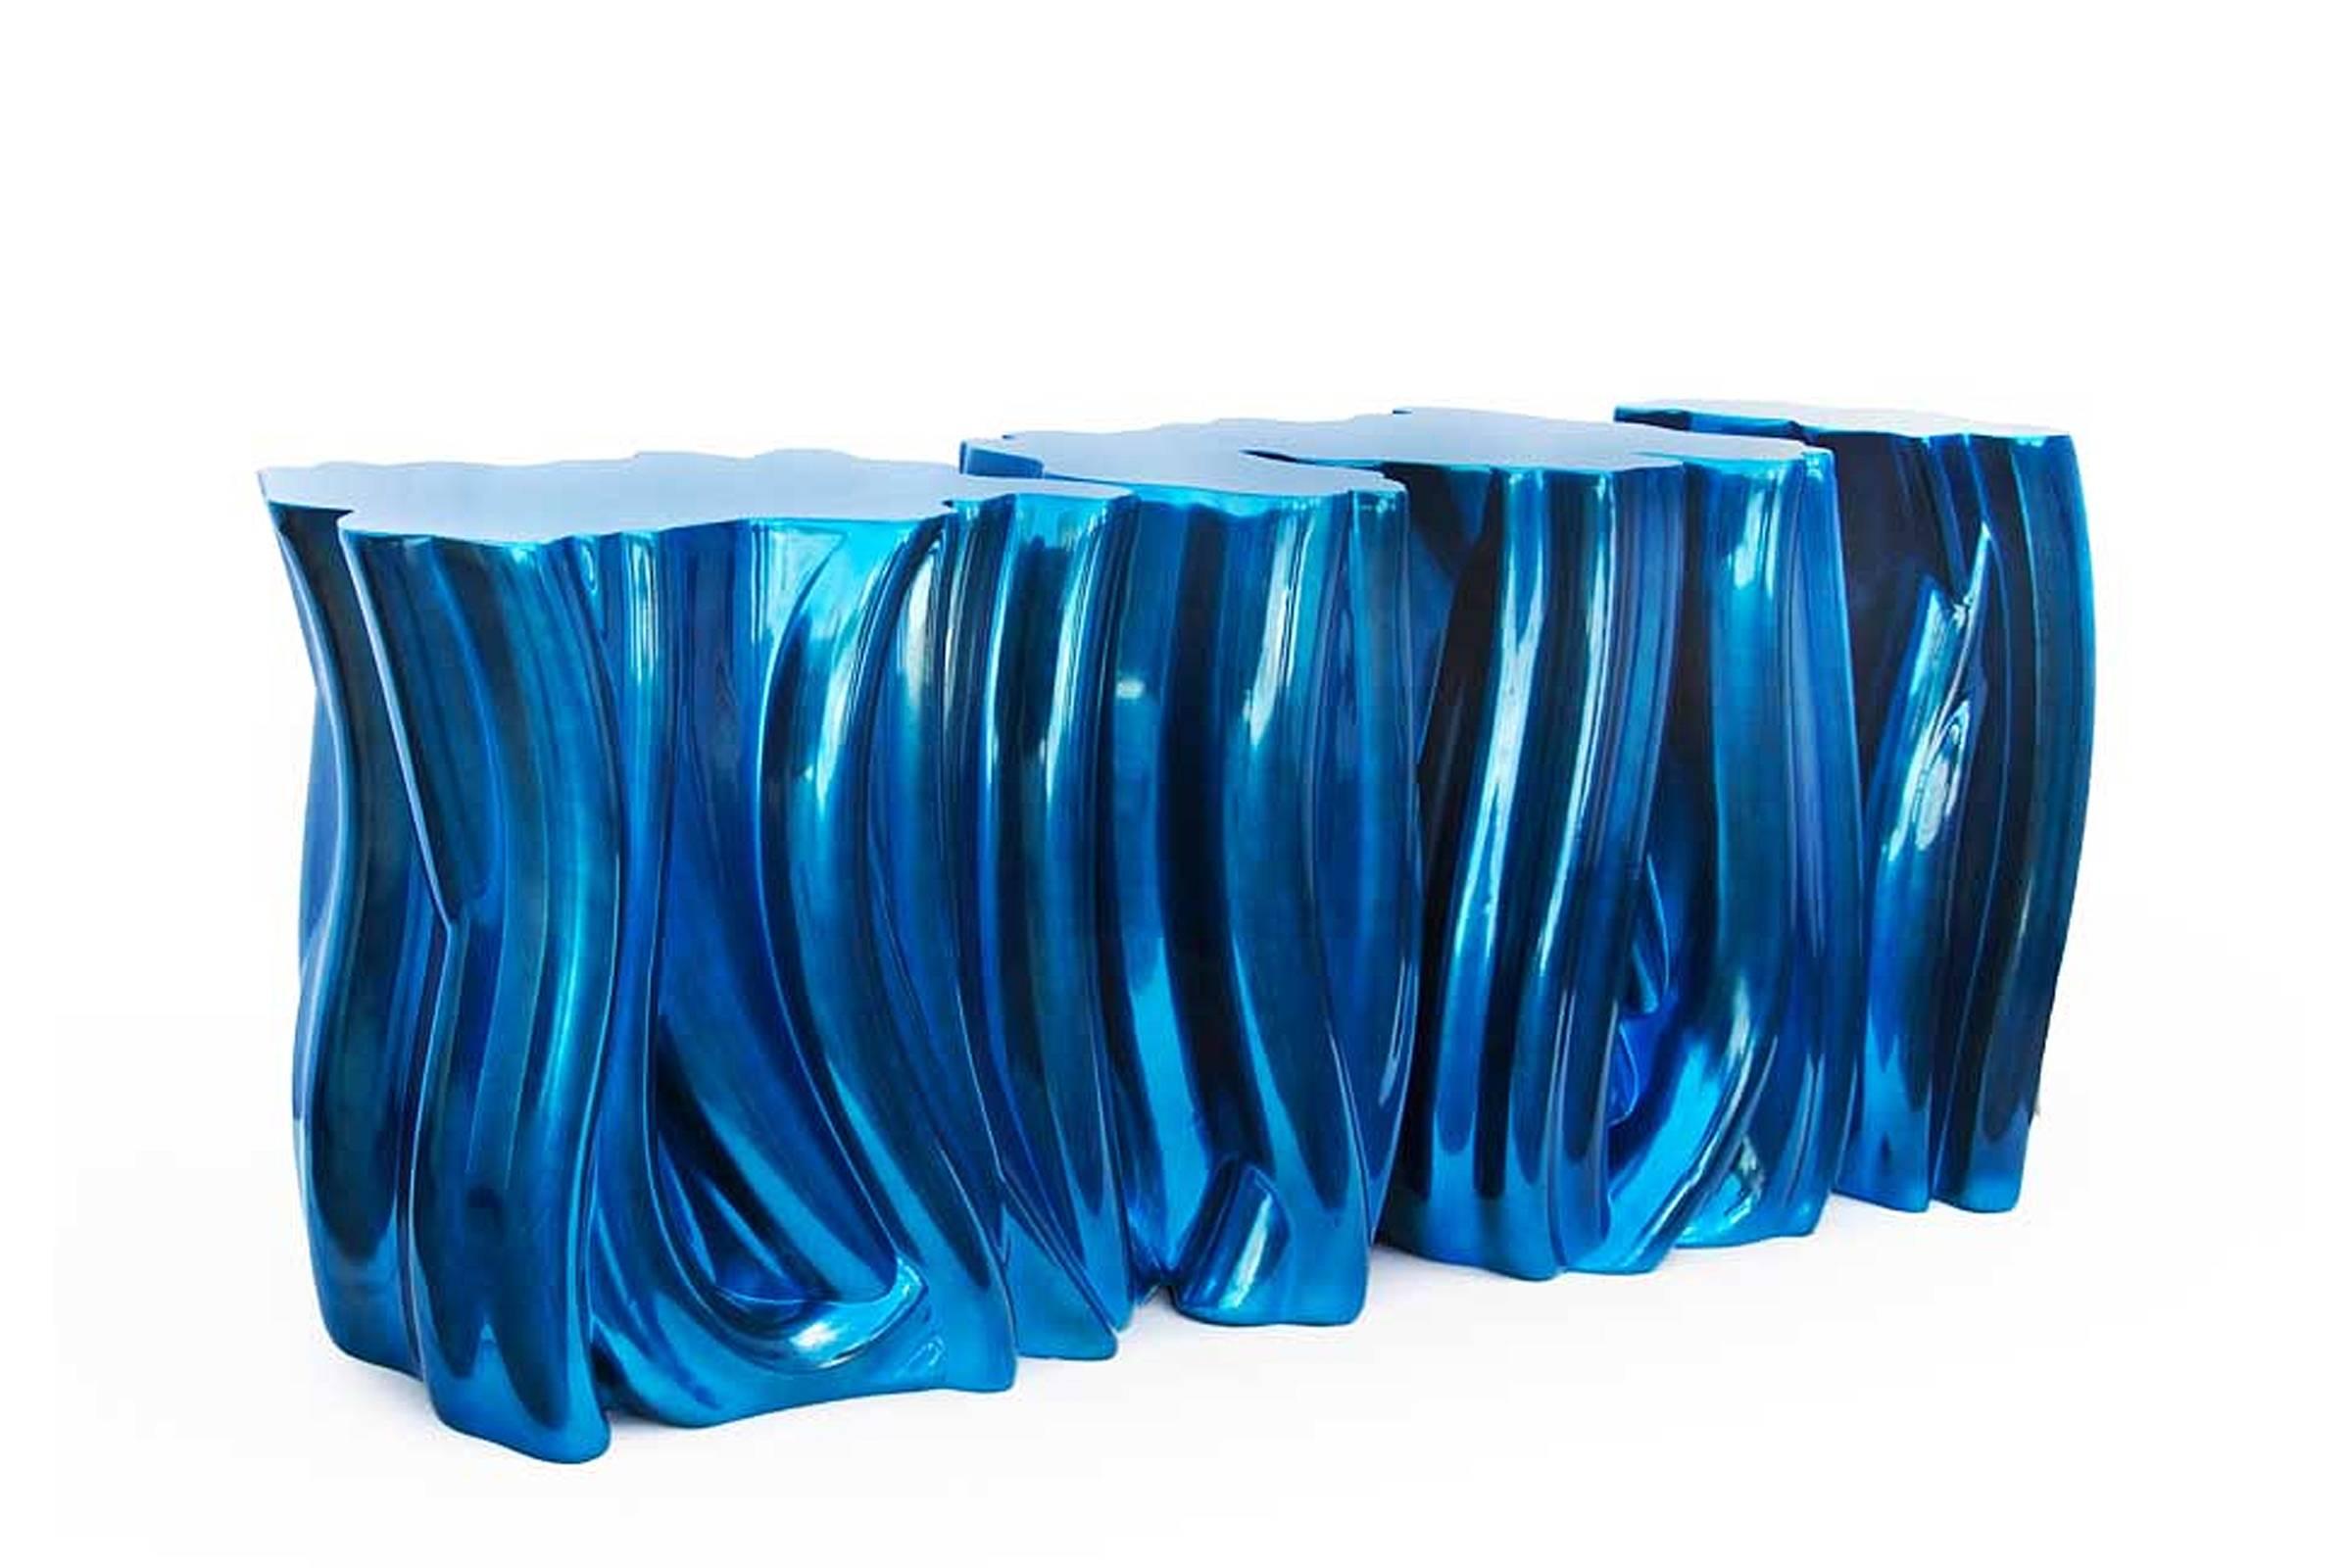 Console Bleu électrique avec structure en fibre de verre avec 
laqué au polyuréthane, verni à la main. Console
en finition bleu électrique. Existe aussi en bleu violet 
Finitions, autres finitions sur demande 

